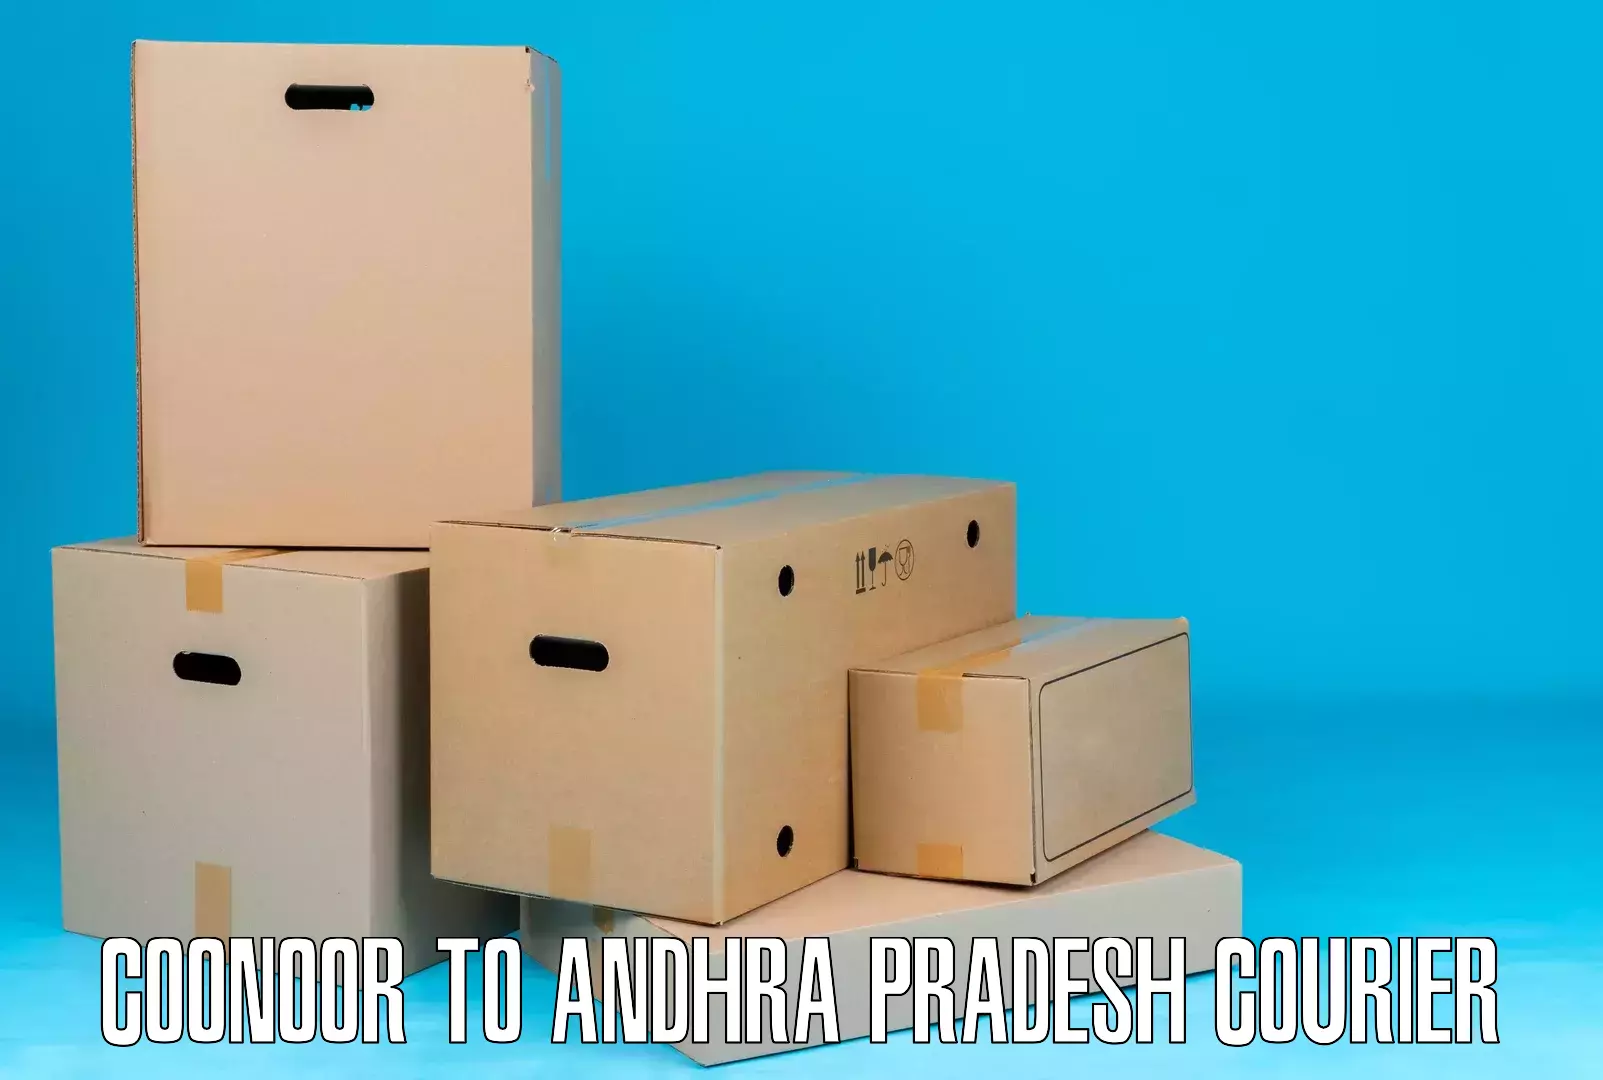 Local delivery service Coonoor to Andhra Pradesh